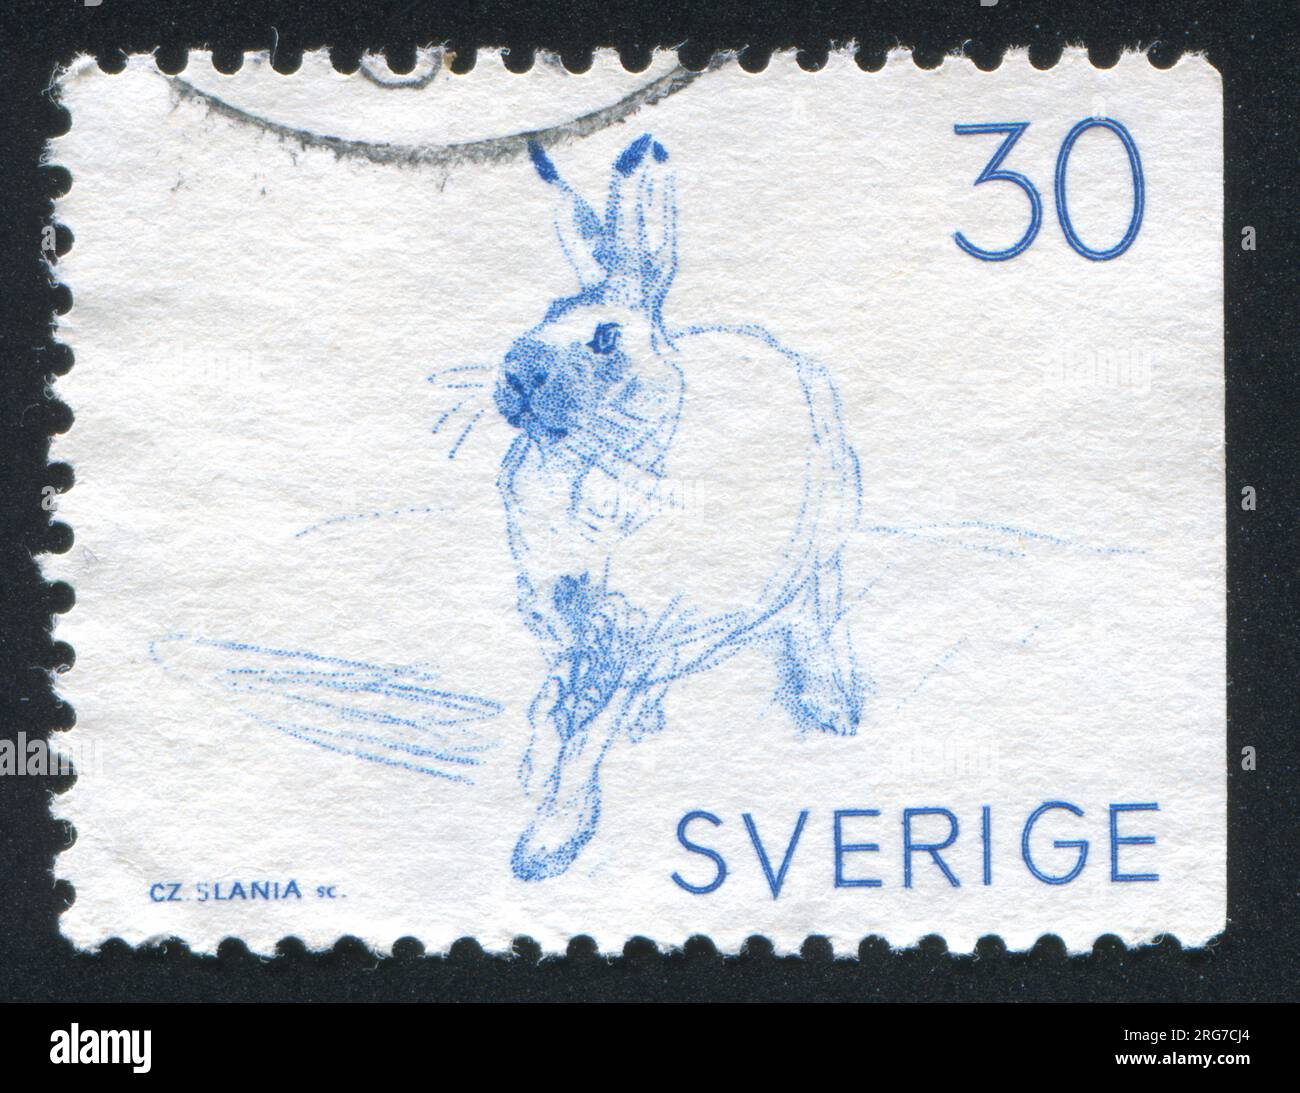 SUÈDE - CIRCA 1968 : timbre imprimé par la Suède, montre des lièvres variables, circa 1968 Banque D'Images